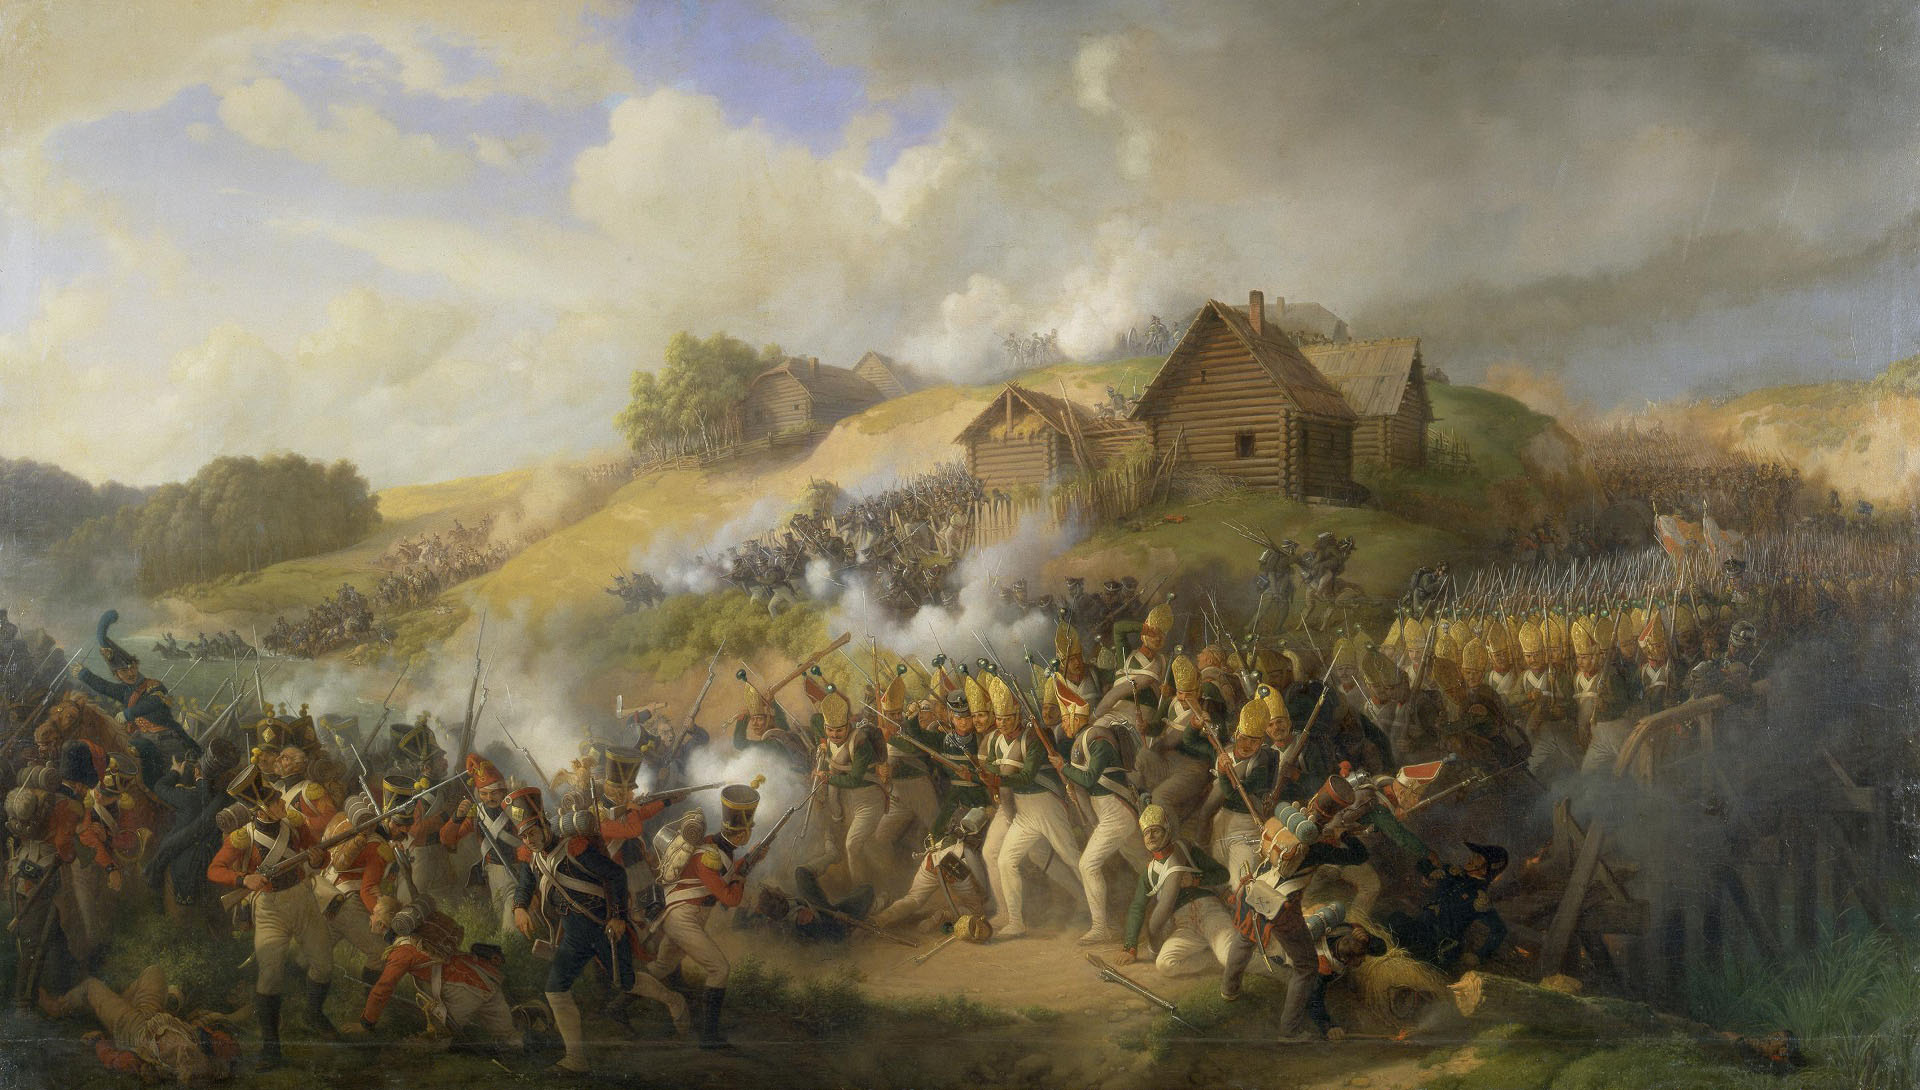 Петер фон Хесс (Гесс). "Сражение при Клястицах 19 (31) июля 1812 года". 1856. Эрмитаж, Санкт-Петербург.